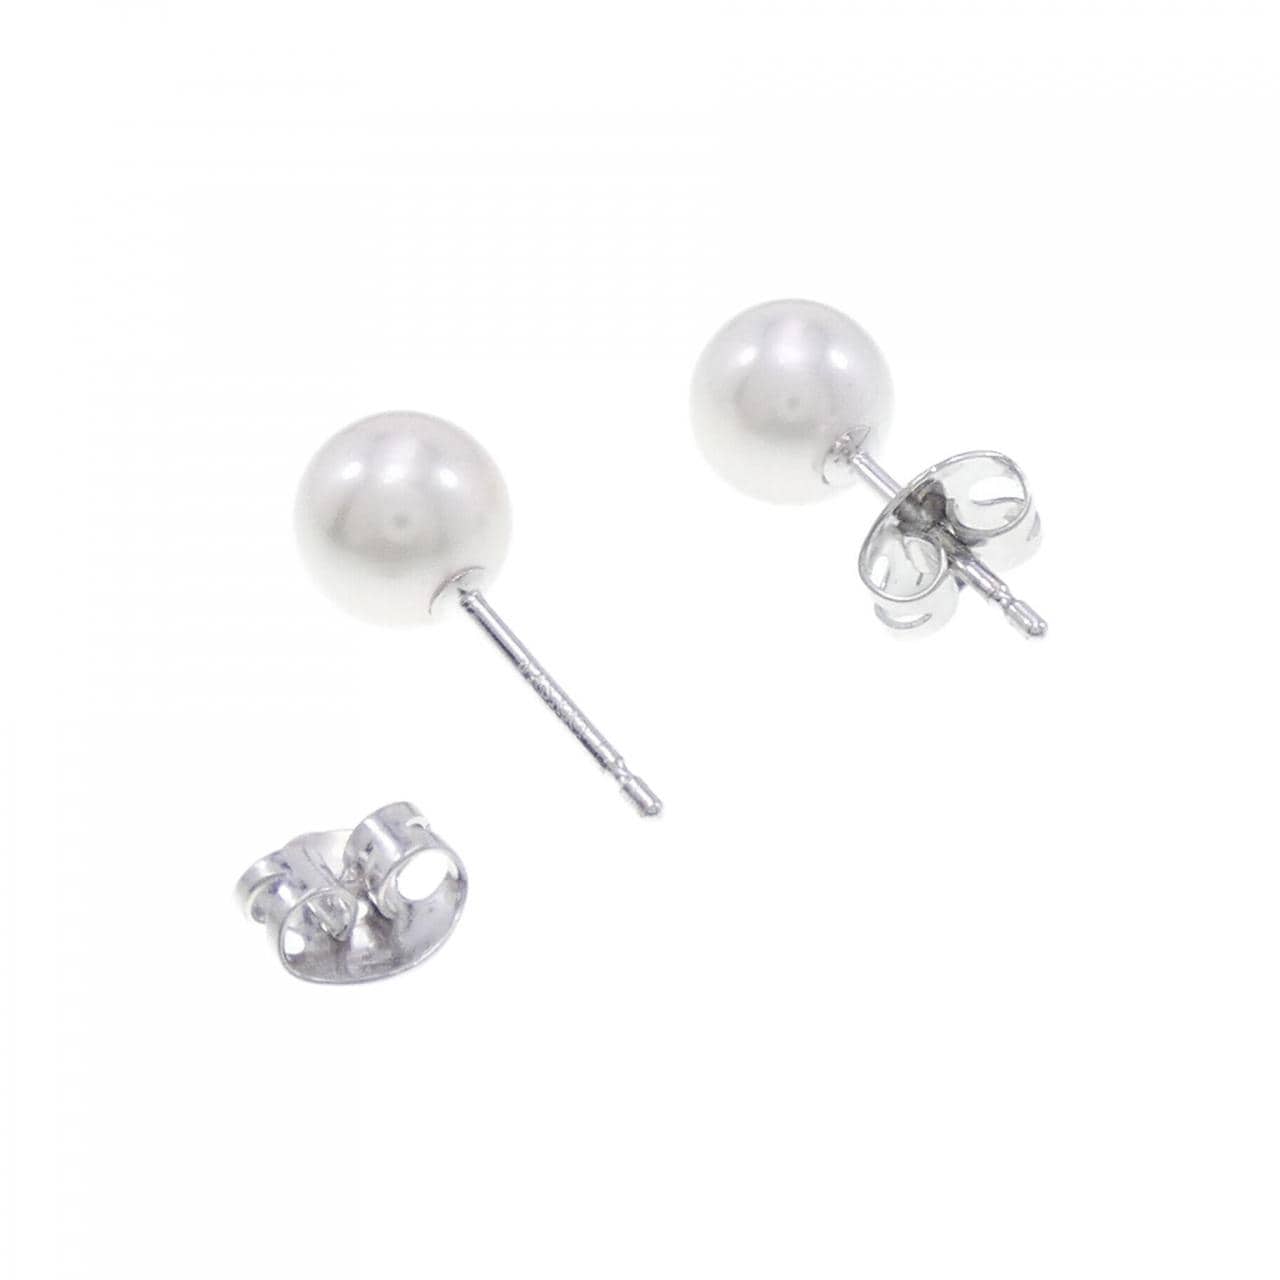 Tasaki Akoya pearl earrings 7.1mm